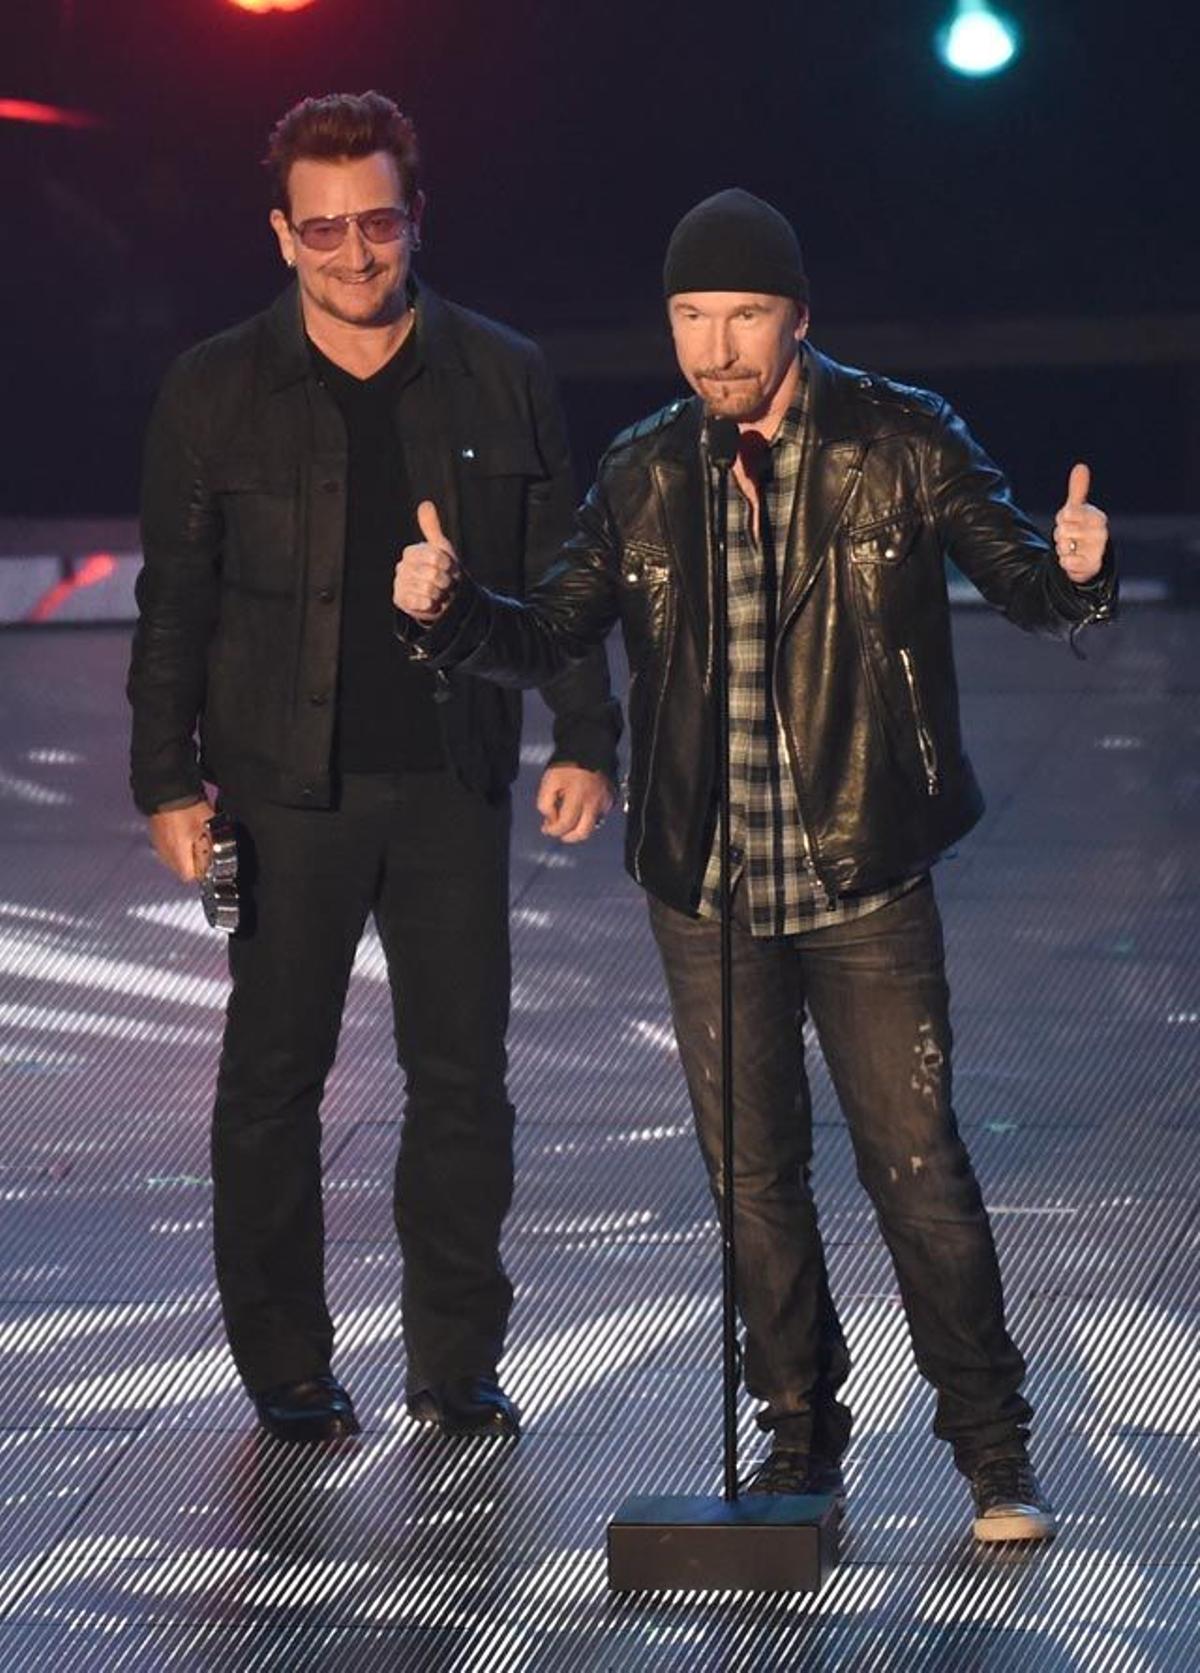 Bono y The Edge, de U2, sobre el escenario de la gala iHeartRadio Awards 2016.